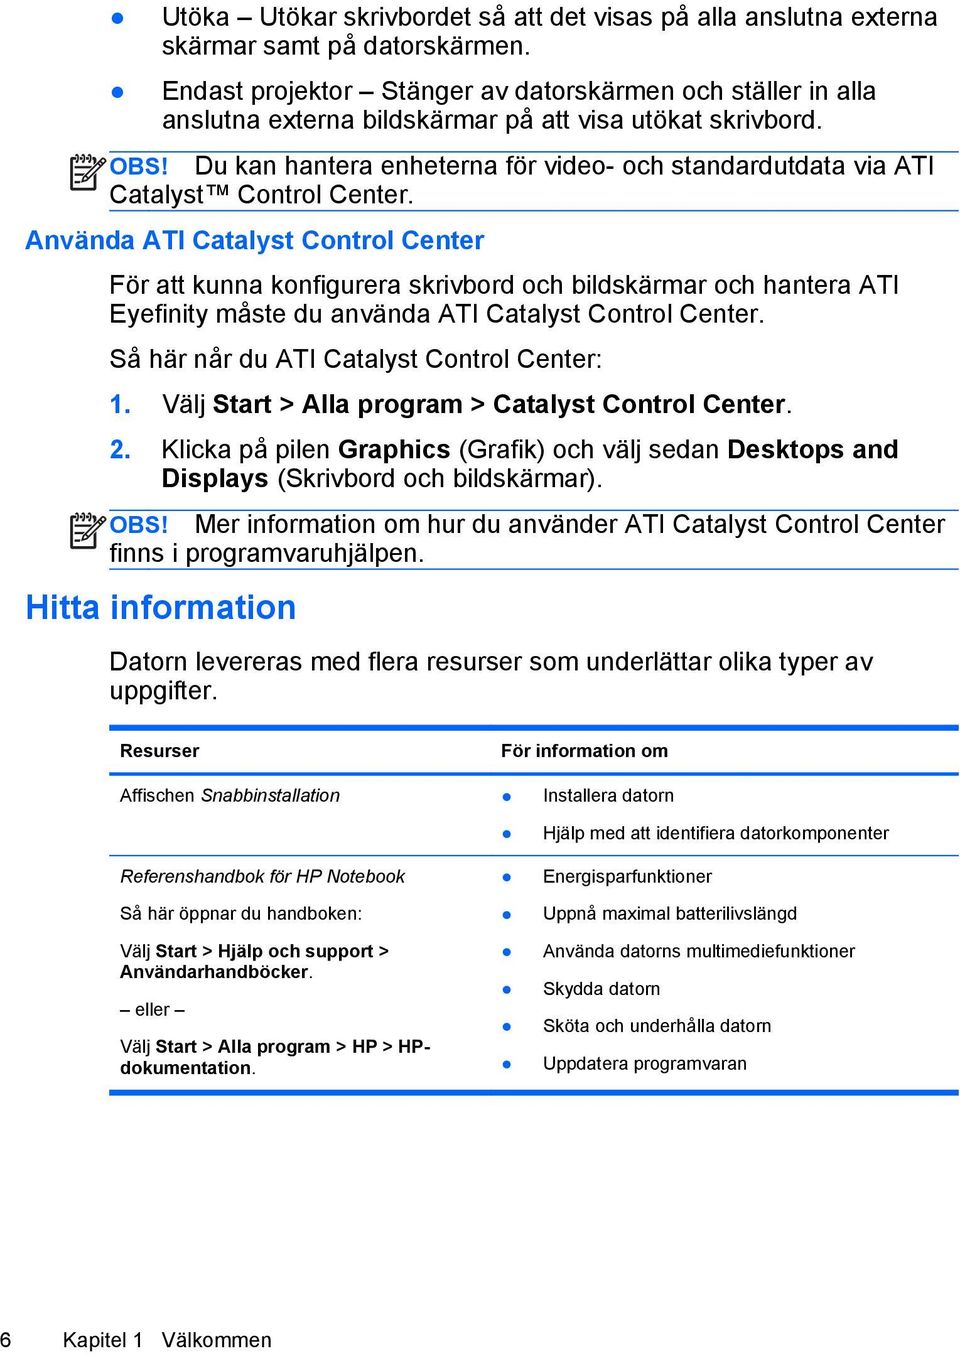 Du kan hantera enheterna för video- och standardutdata via ATI Catalyst Control Center.